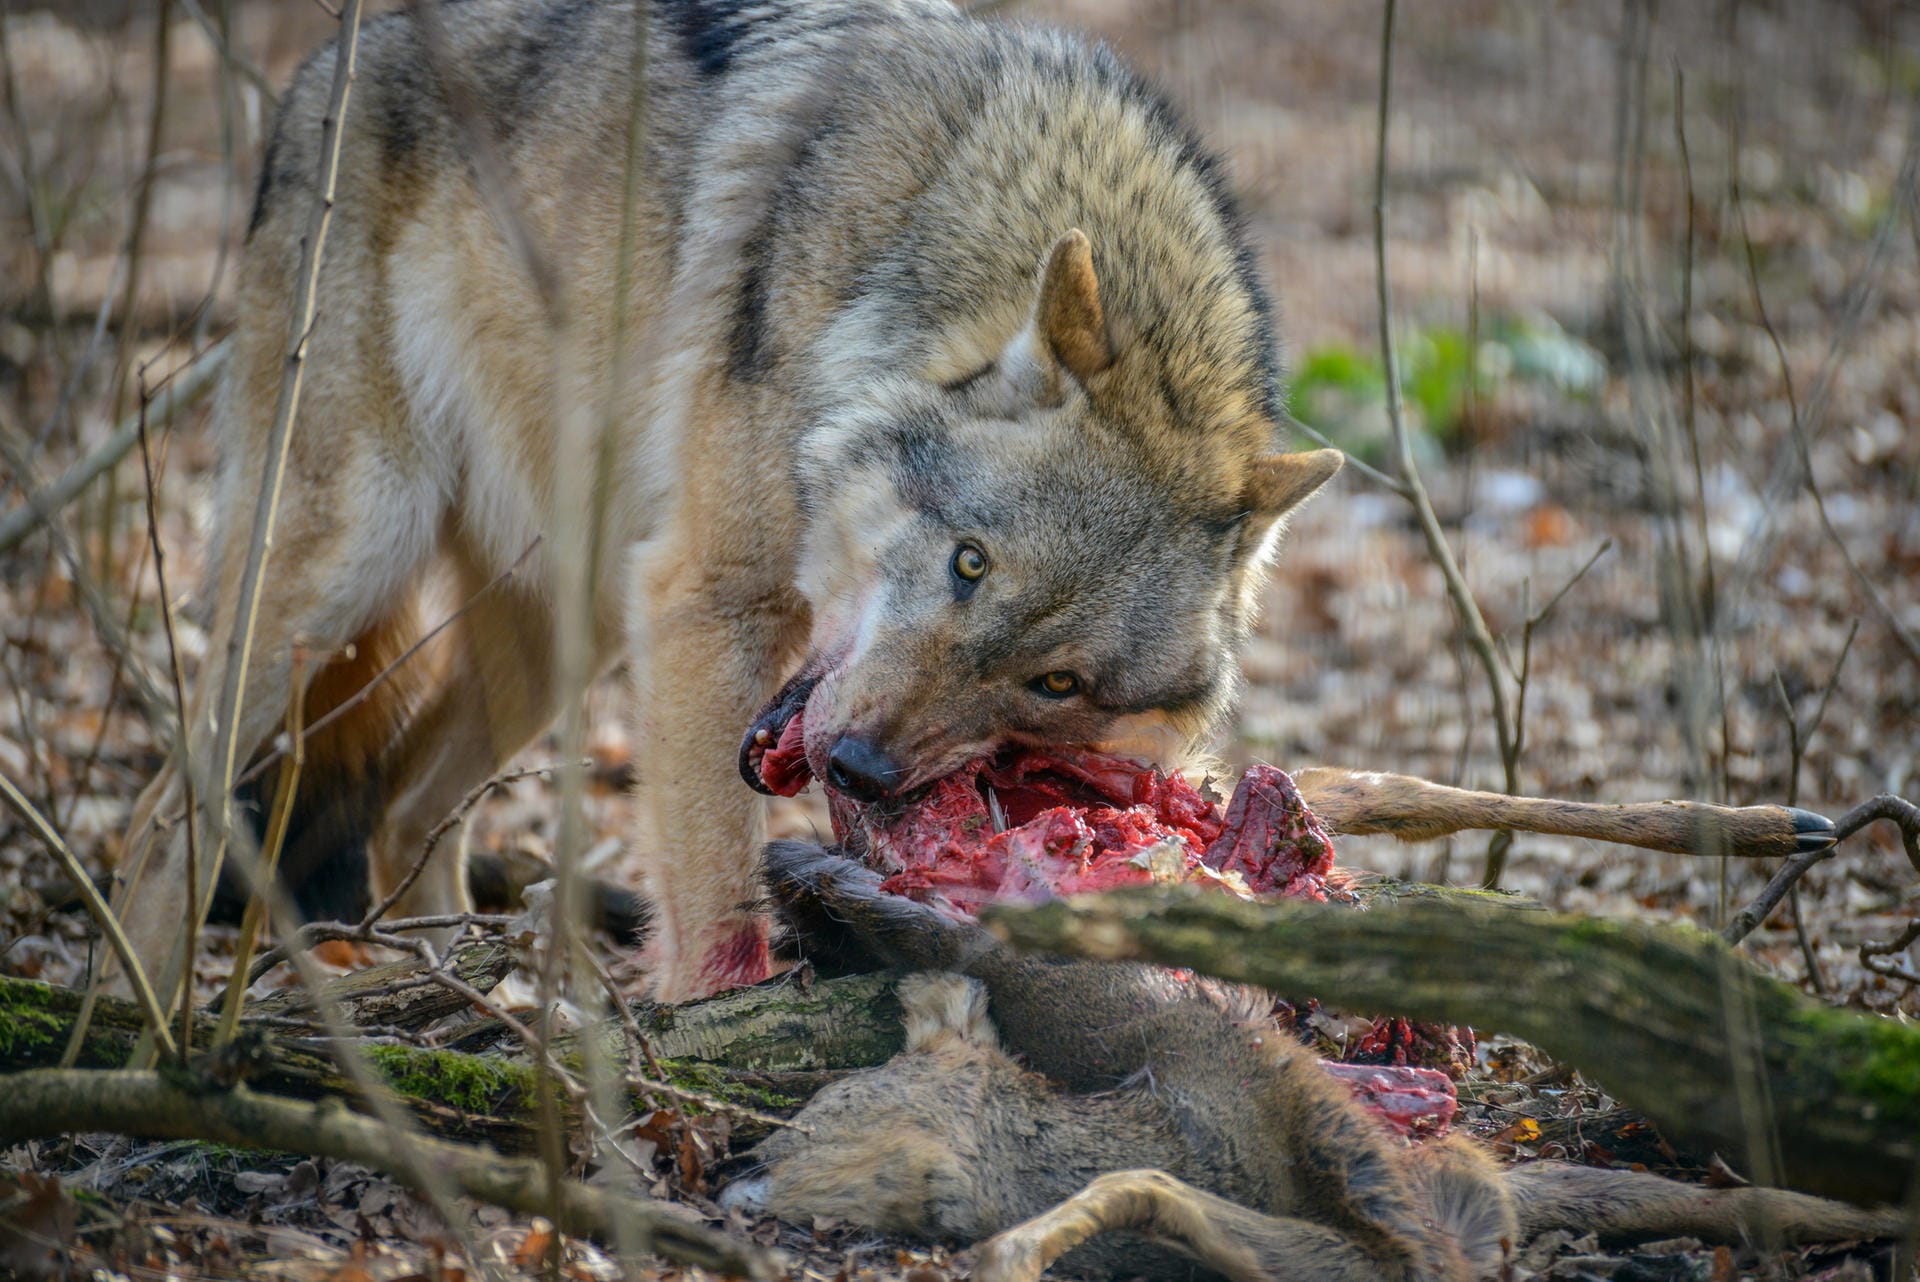 Der Wolf frisst seine Beute, die Jäger und Förster als "Riss" bezeichnen. Abstand halten, denn der Wolf ist nicht ans Teilen gewöhnt.